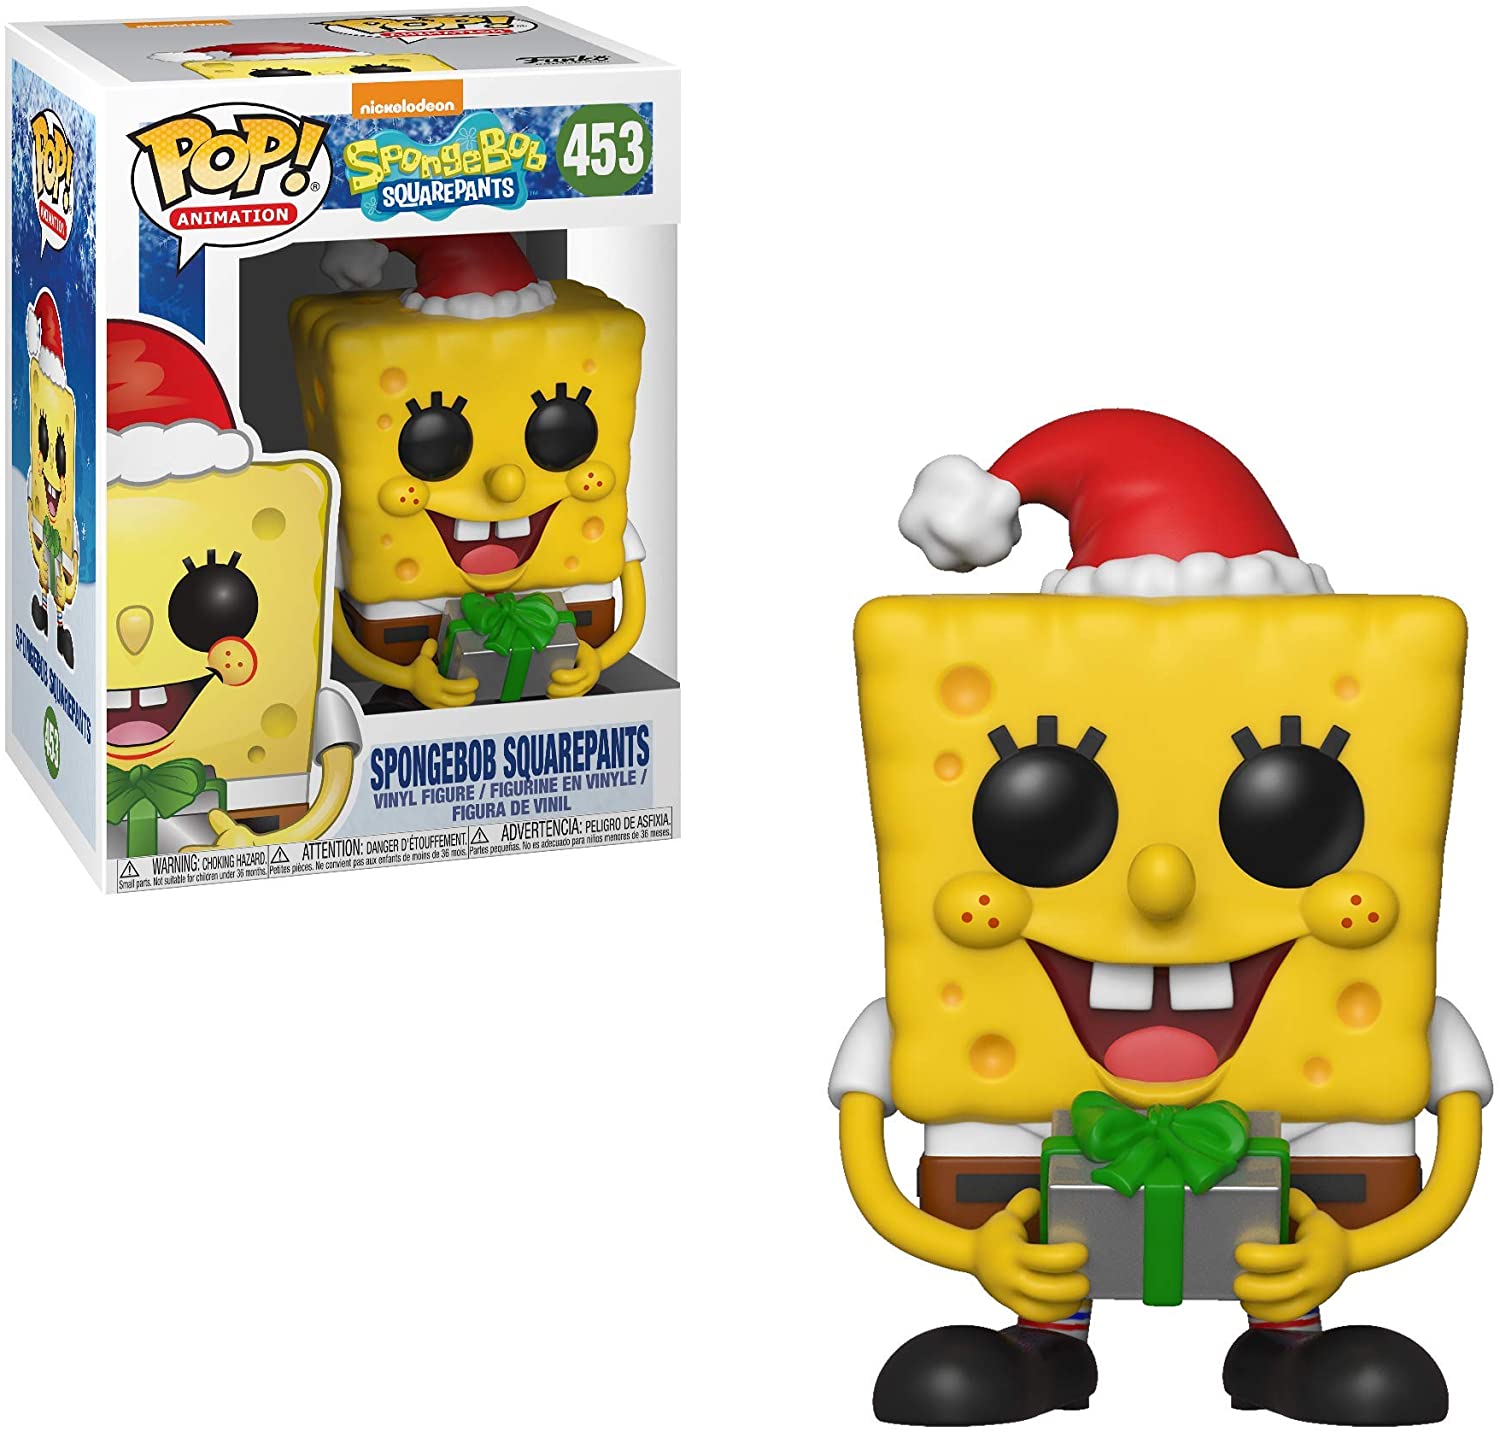 期間限定送料無料 スポンジボブ カートゥーンネットワーク Spongebob キャラクター アメリカ限定多数 送料無料 Funko Pop Animation Spongebob Squarepants Holiday Spongebob Collectible Fスポンジボブ カートゥーンネットワーク Spongebob キャラクター